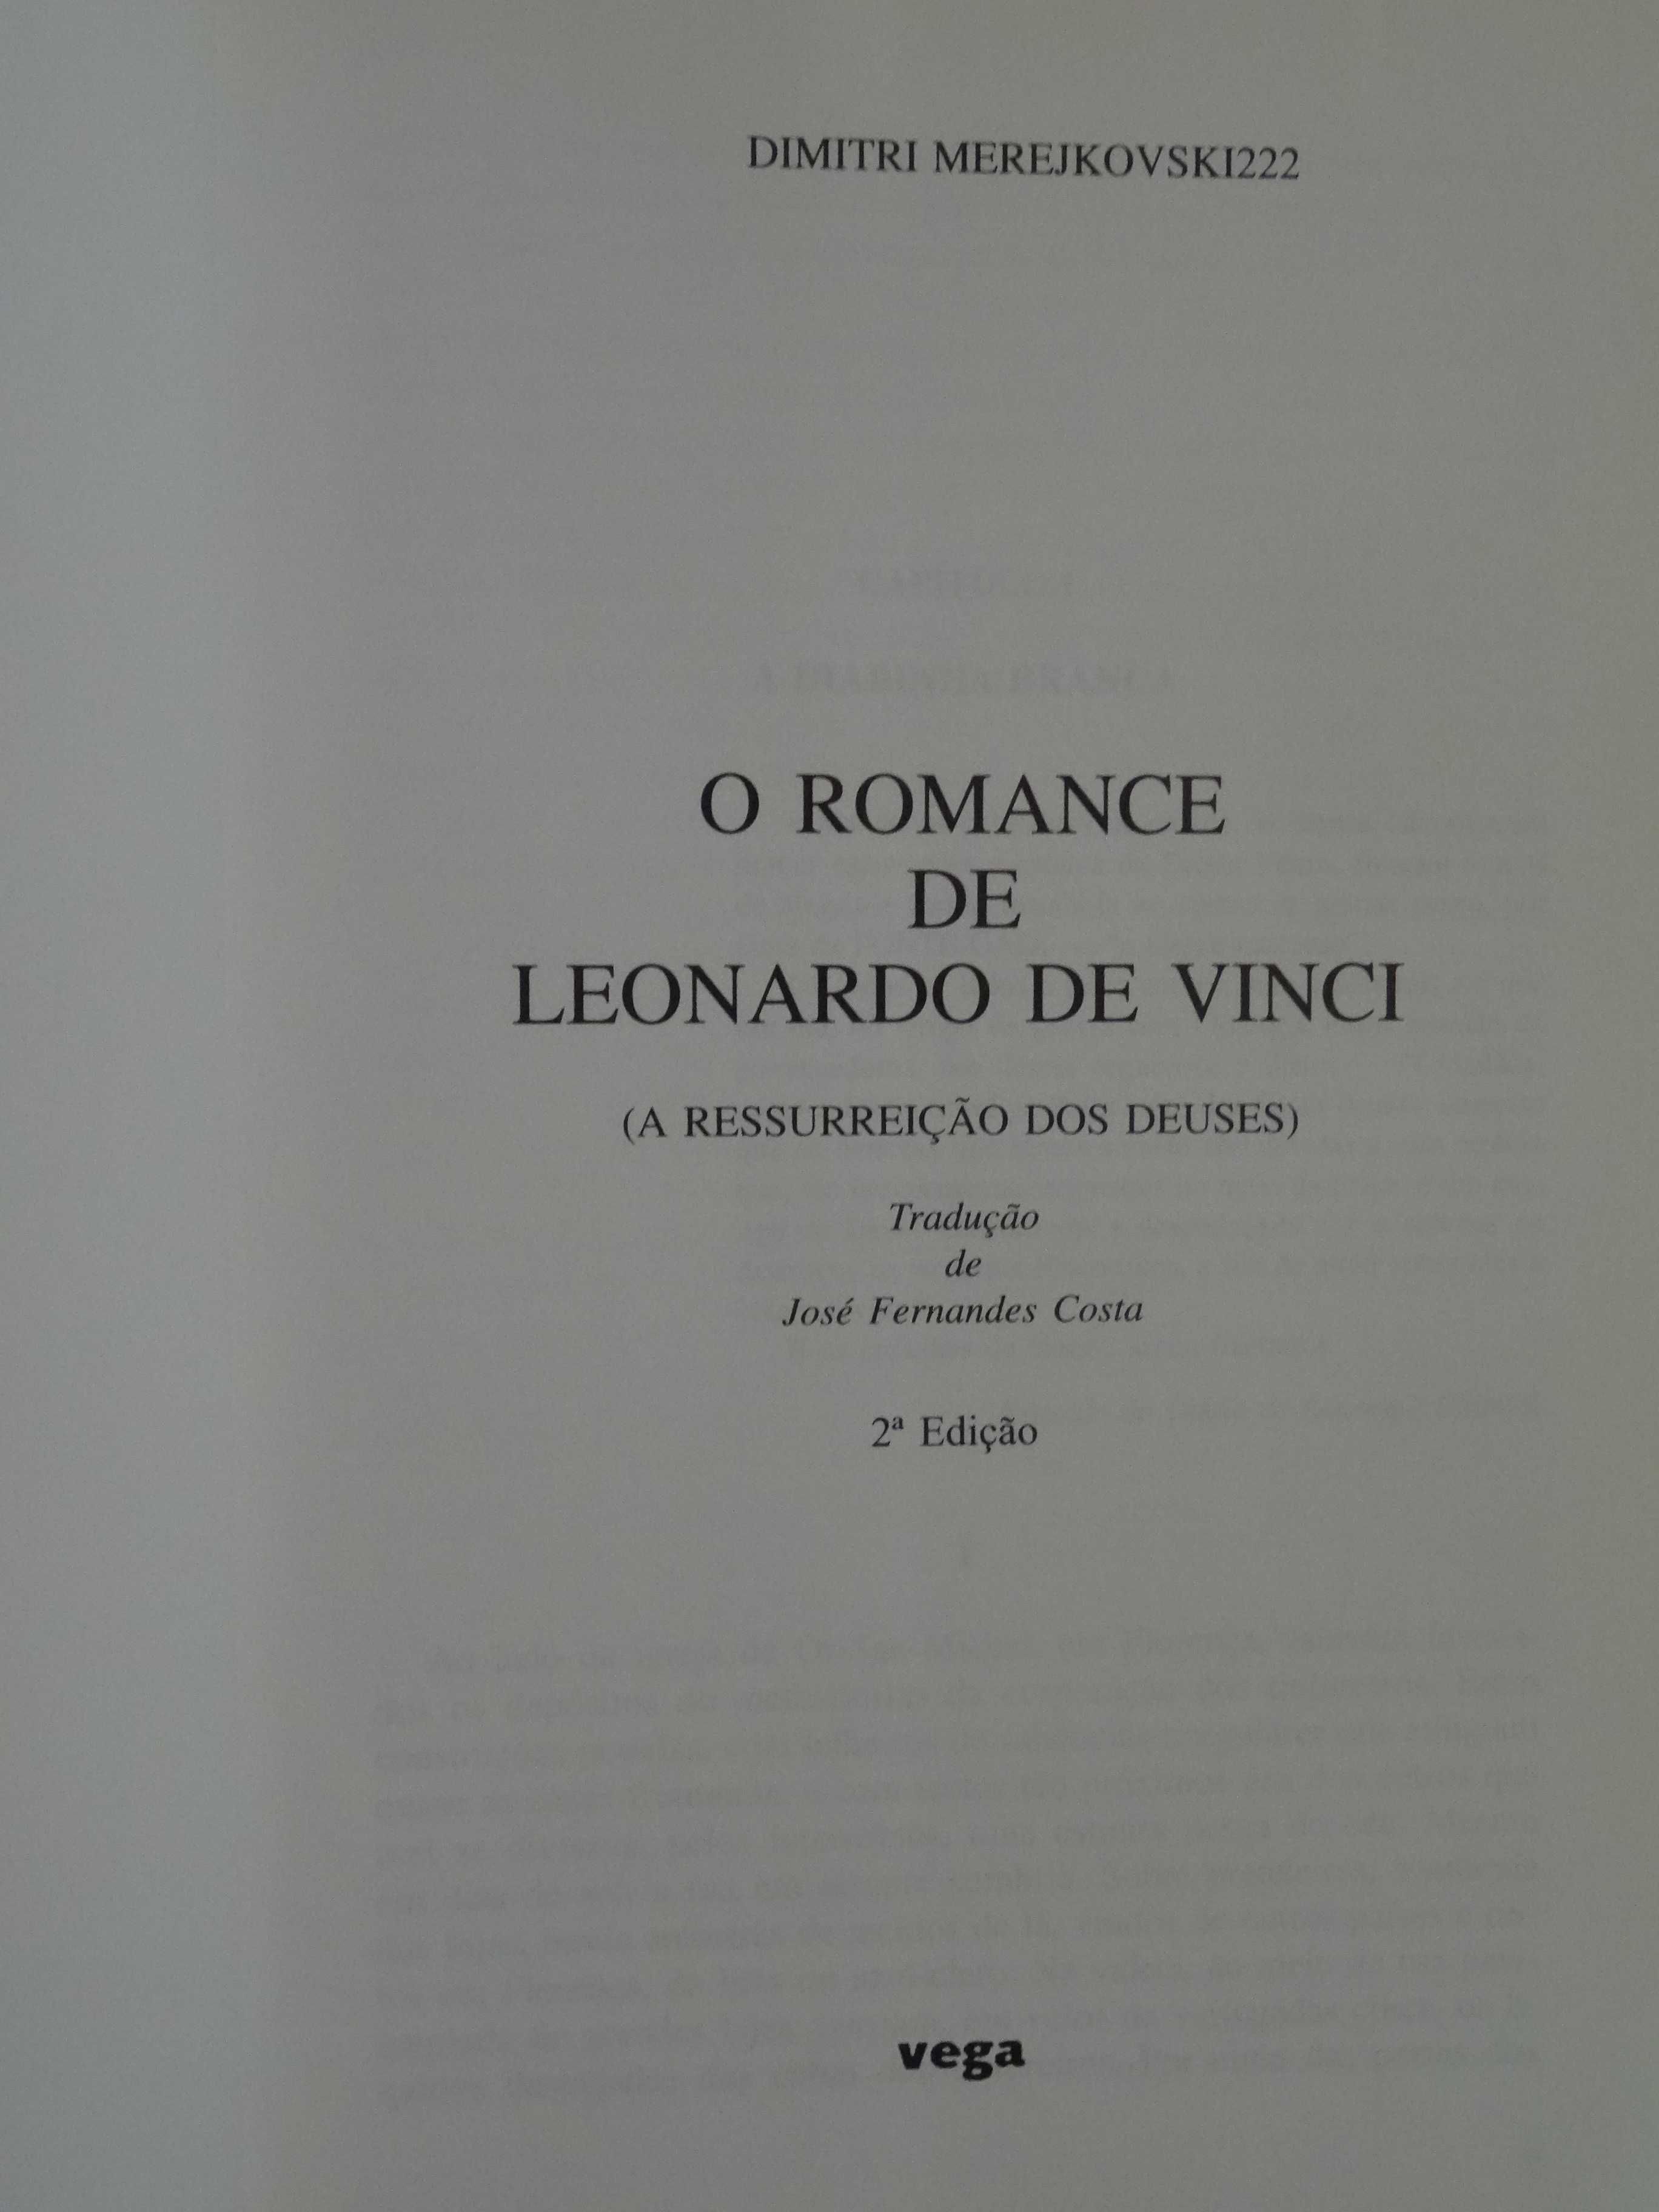 O Romance de Leonardo De Vinci de Dimitri Merejkovski